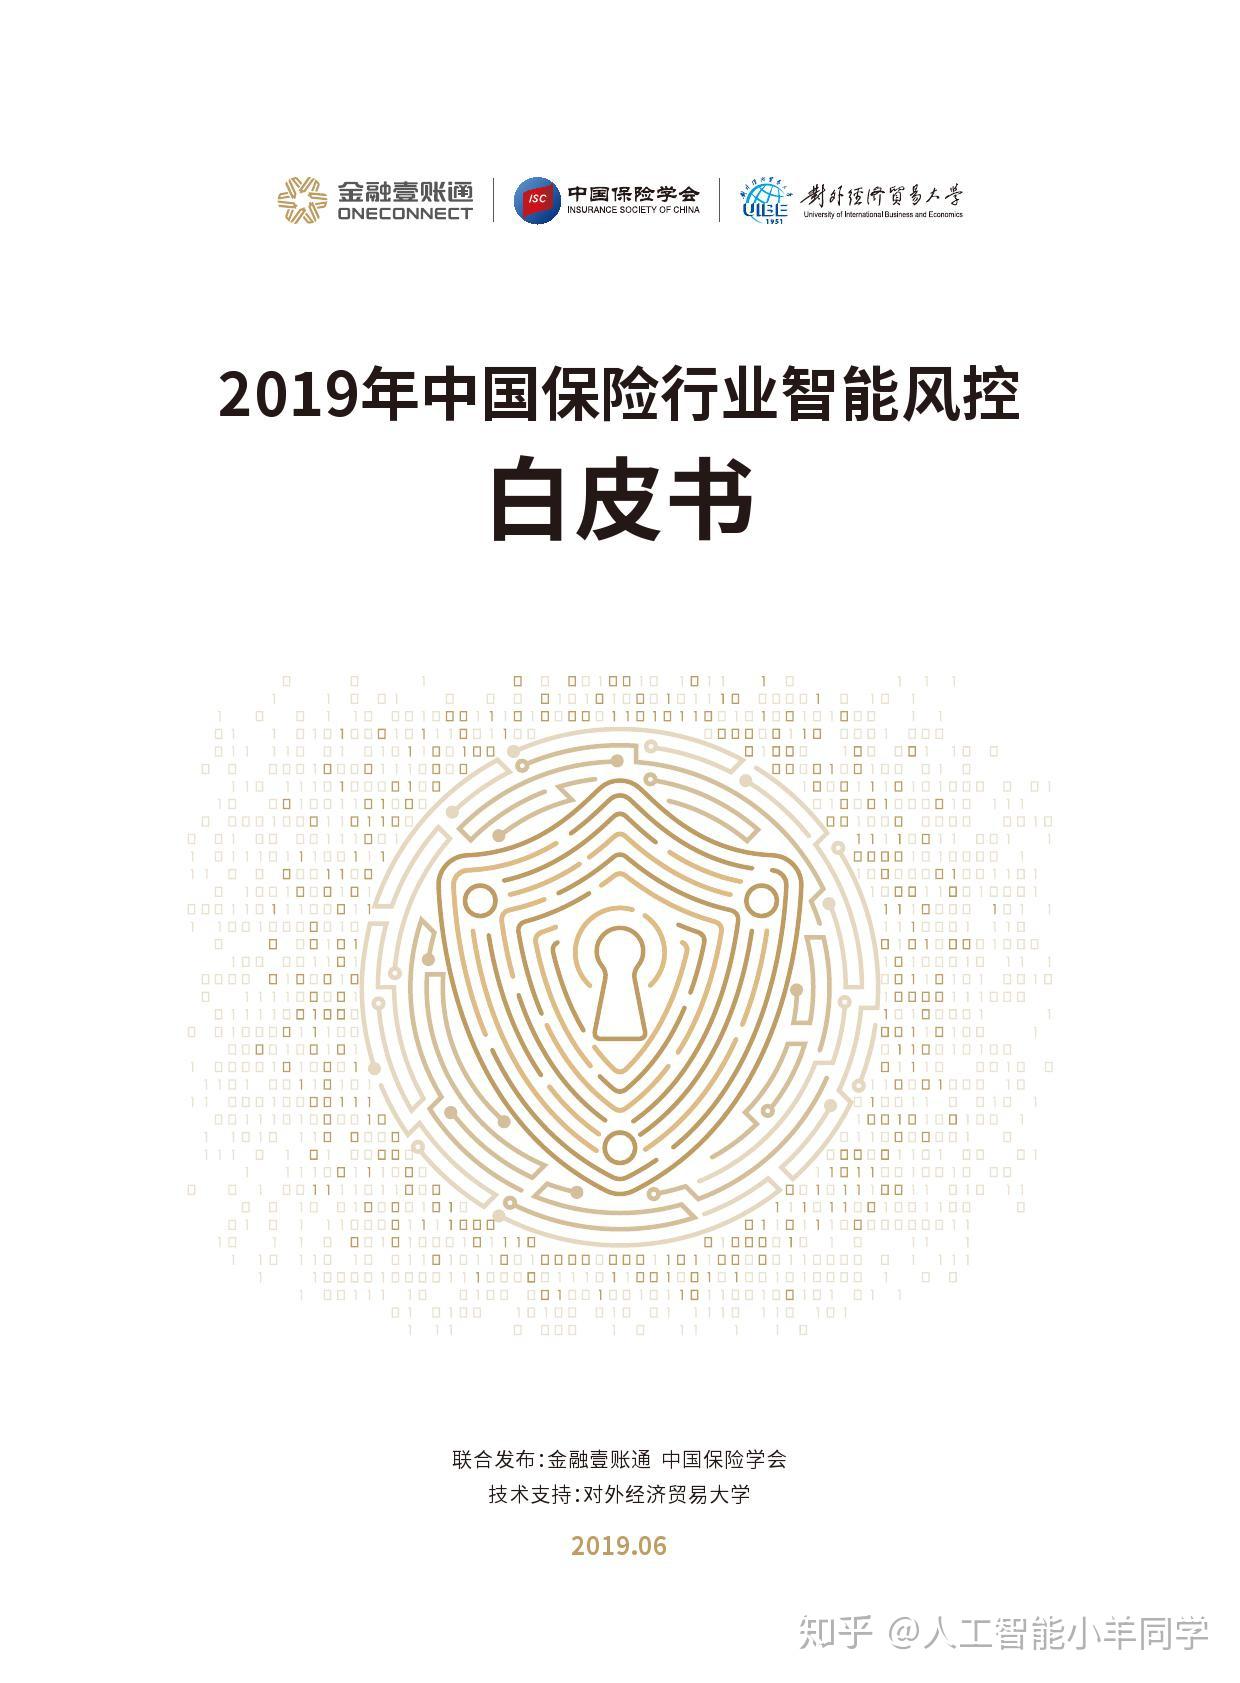 中国保险学会:2019年中国保险行业智能风